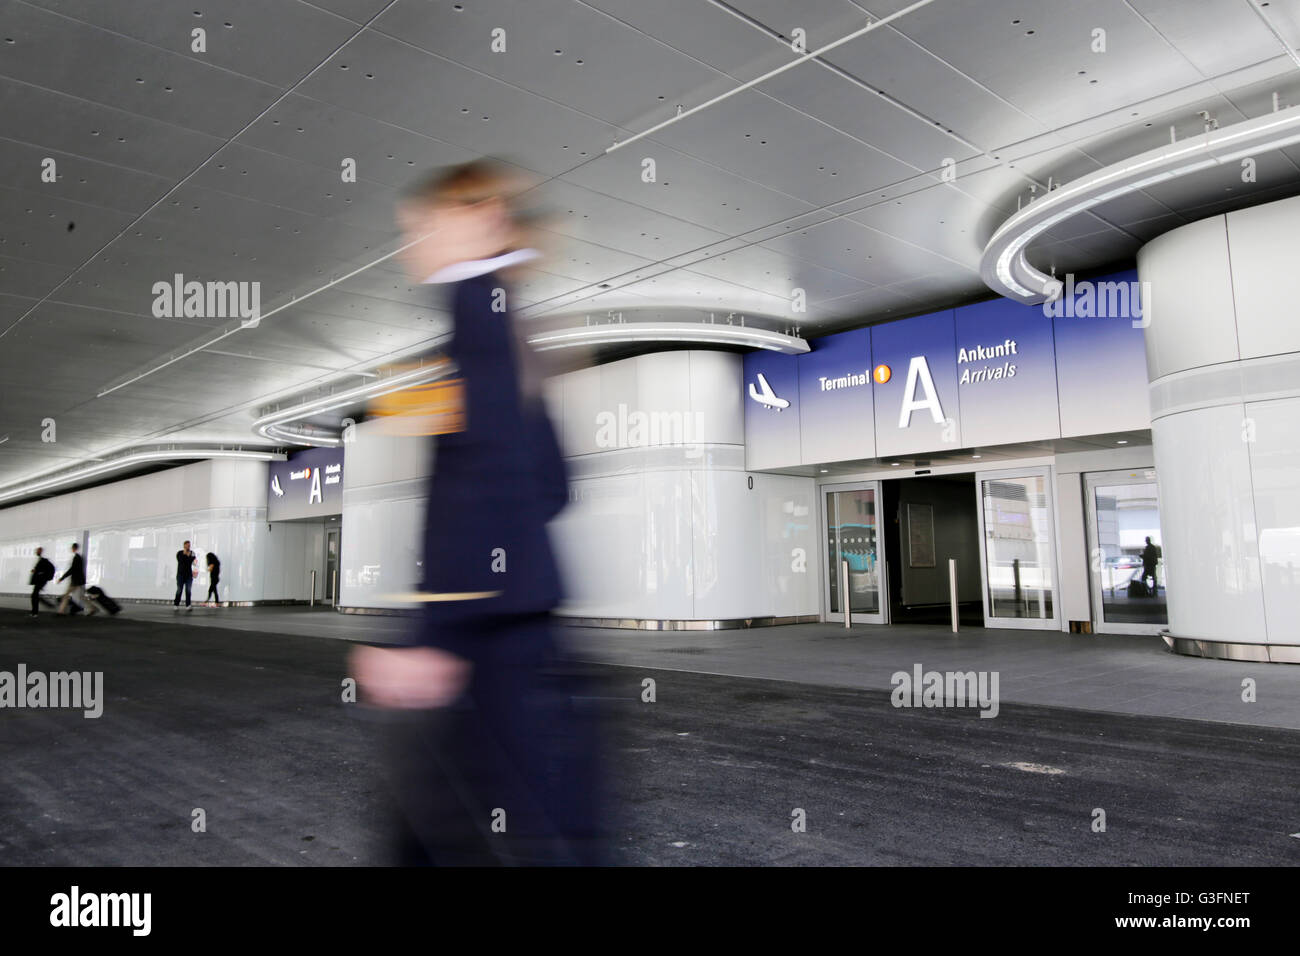 Die neu gestaltete Fassade der Ankunftsbereich im terminal 1 des Flughafens Frankfurt/Main, Deutschland, 9. Juni 2016. Foto: SEBASTIAN STENZEL/dpa Stockfoto